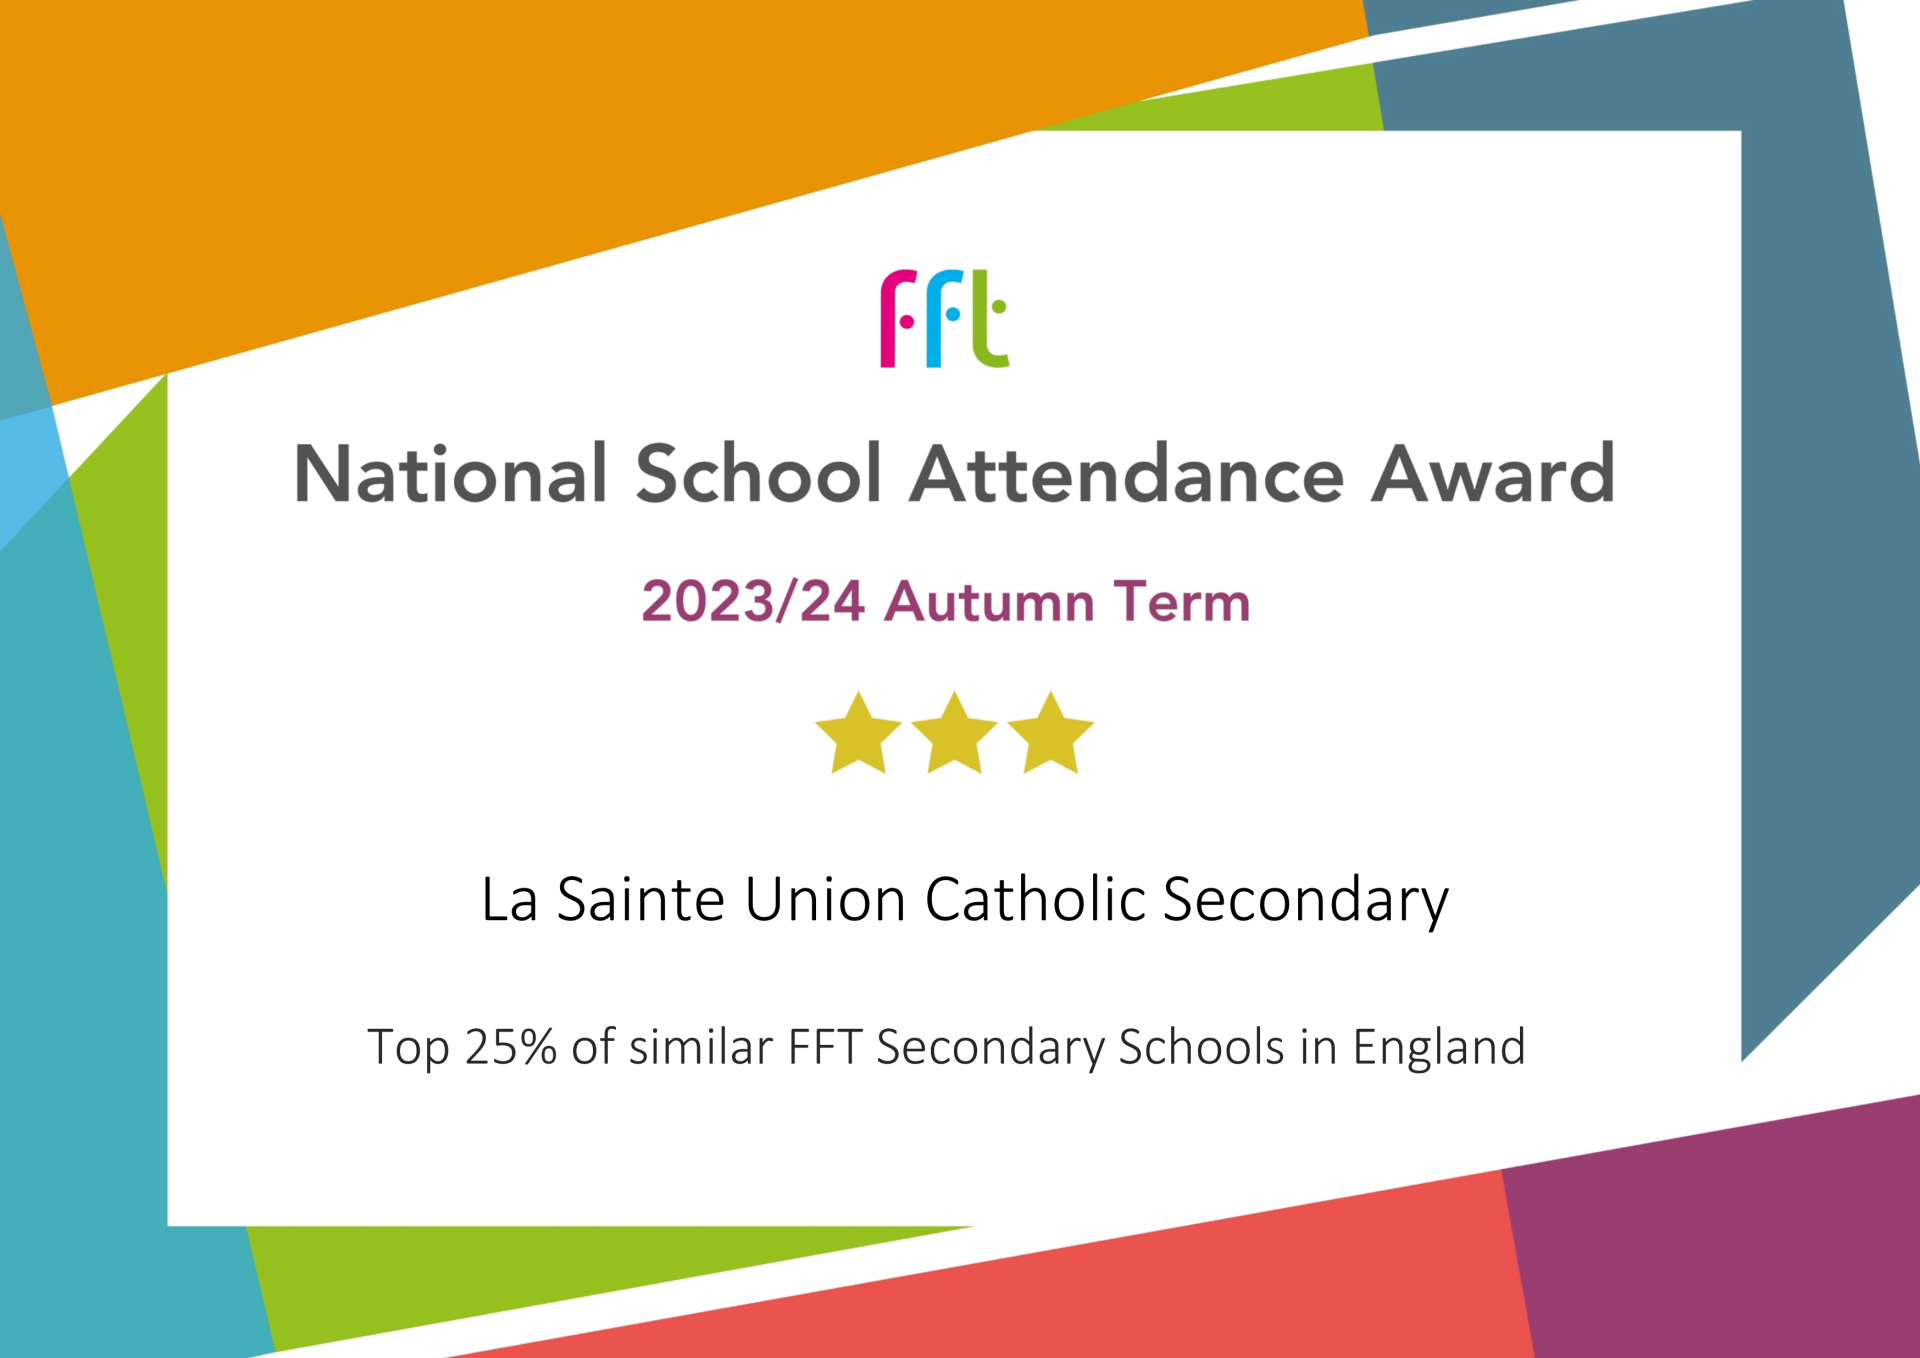 FFT Attendance Award Autumn 2023